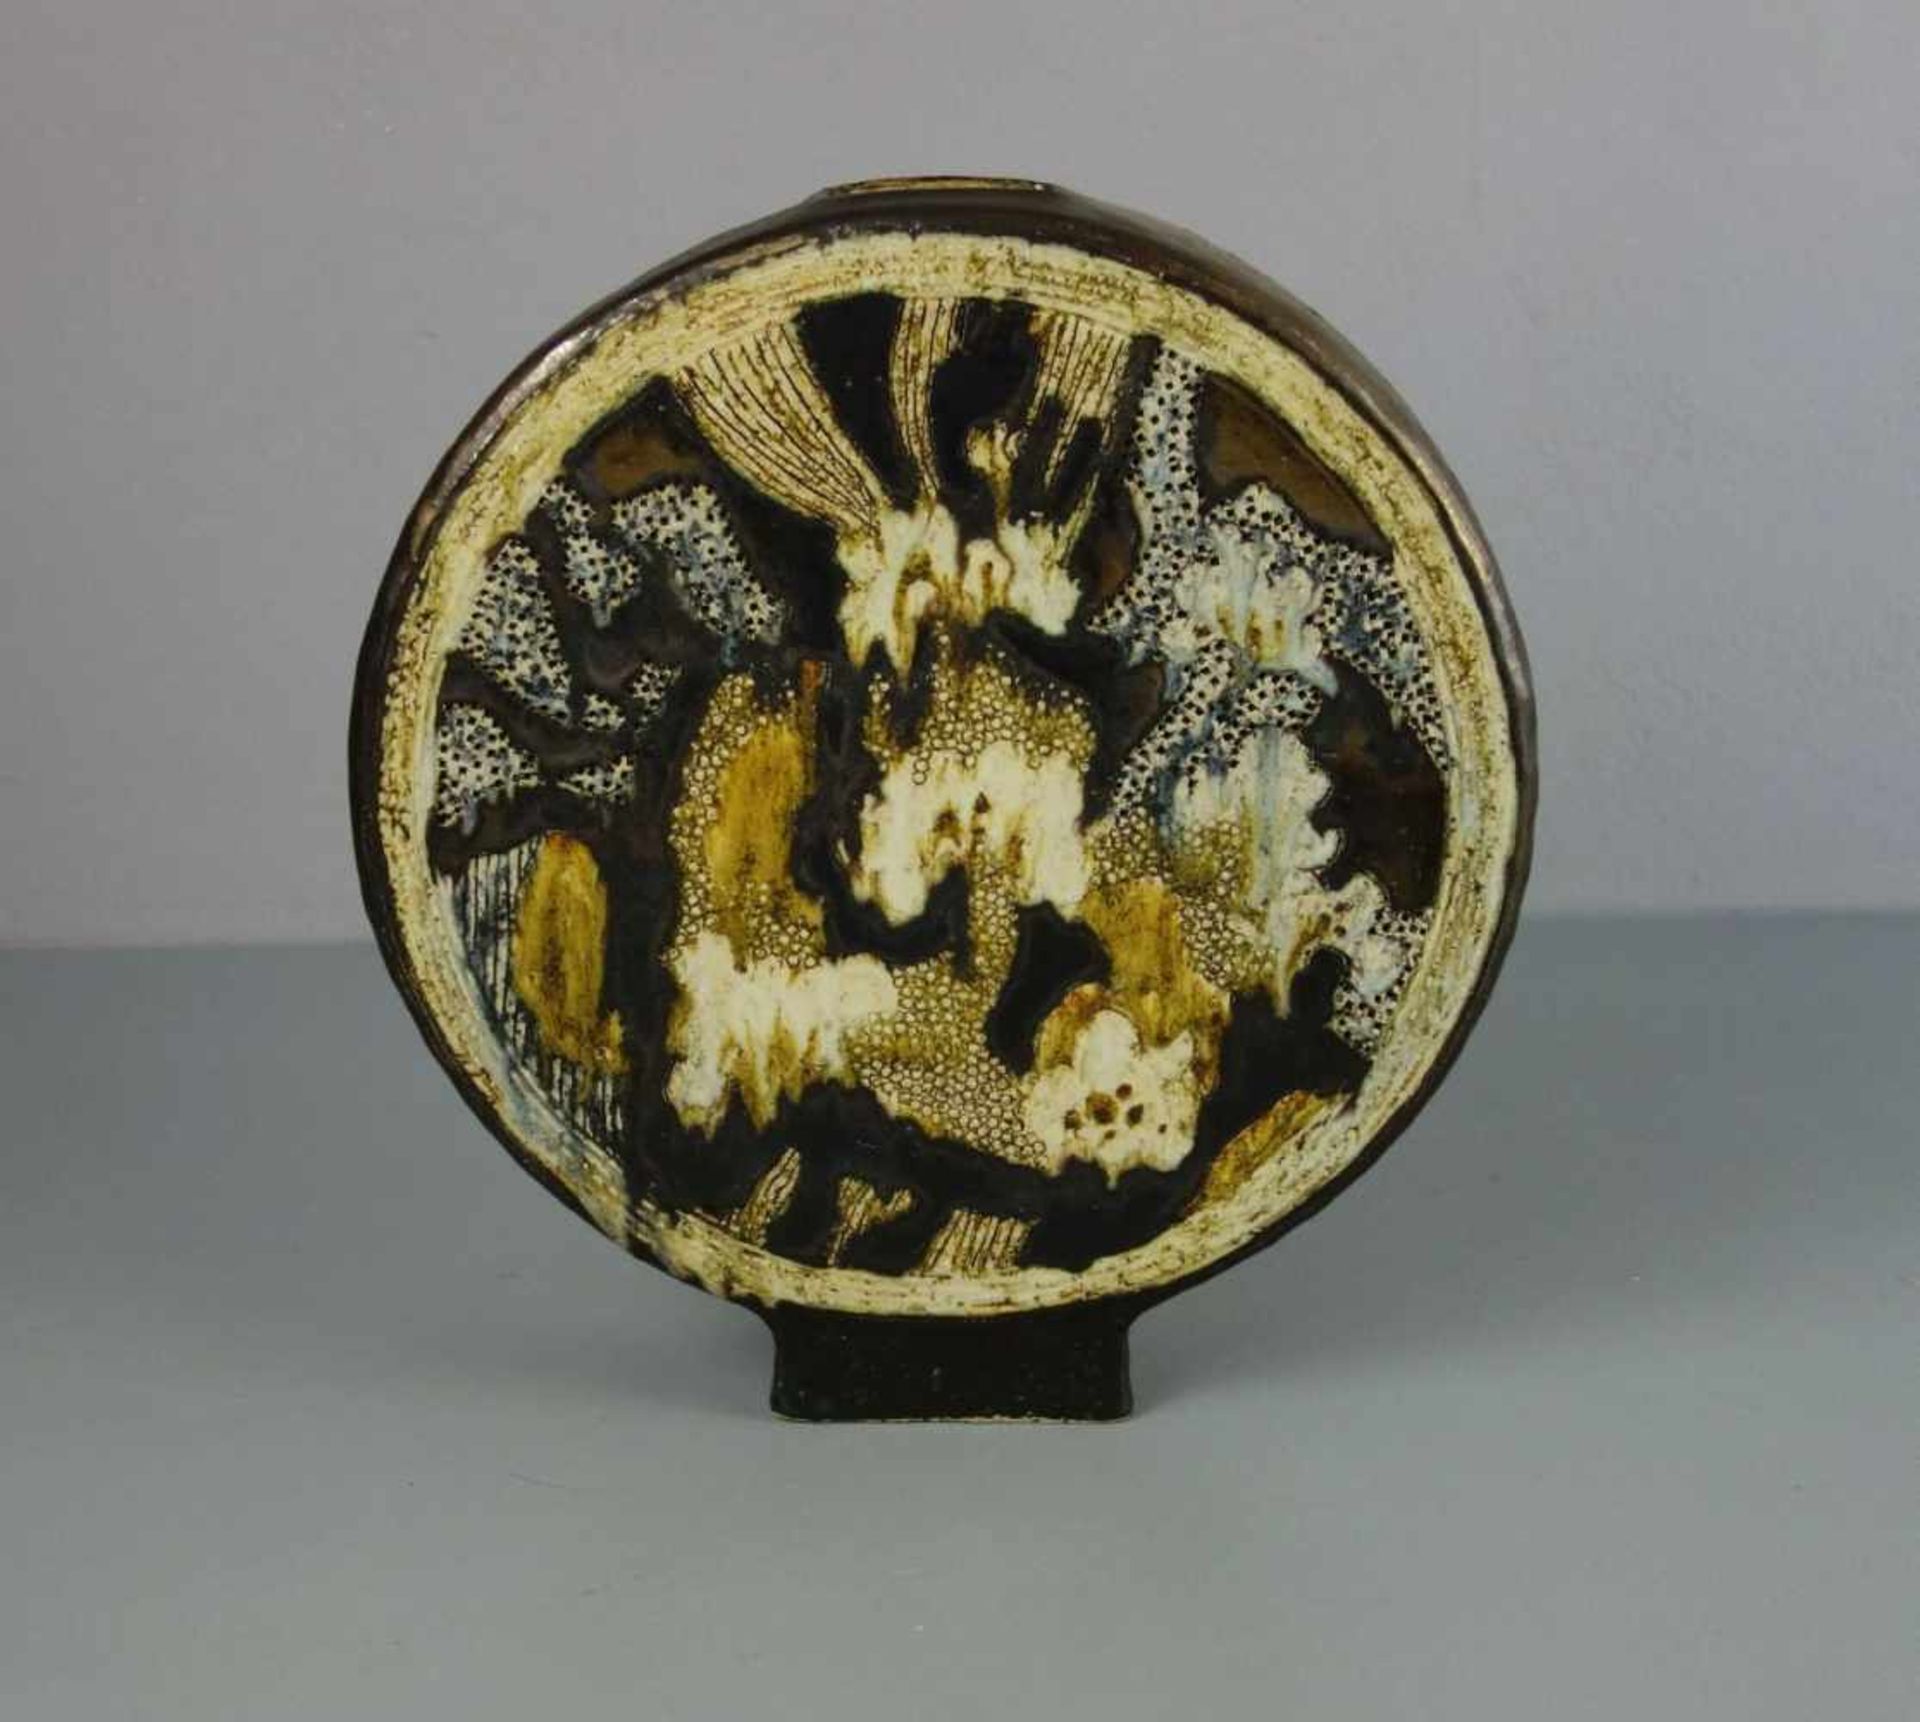 VASE, Keramik, heller Scherben, unter dem Stand monogrammiert "Jo. H.", um 1979. Scheibenförmiger